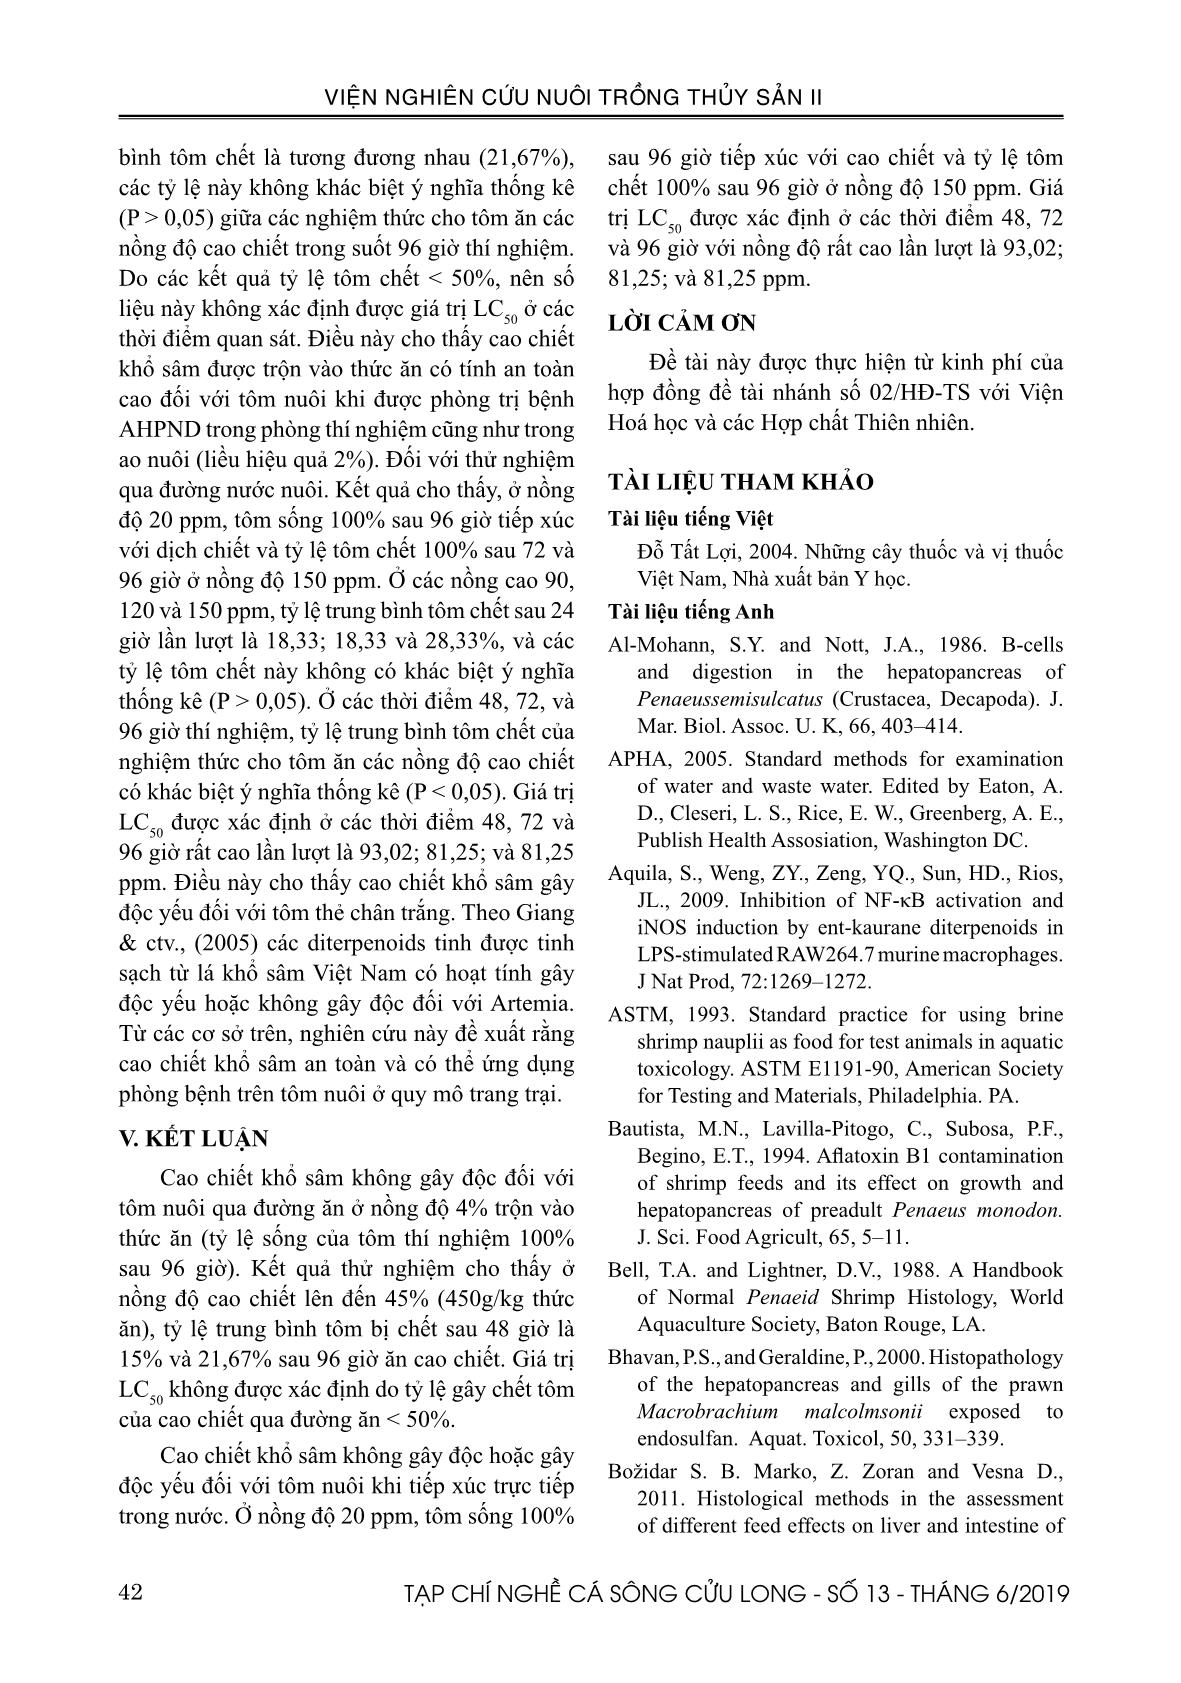 Độ an toàn của cao chiết khổ sâm (Croton tonkinensis) đối với tôm thẻ (Penaeus vannamei) ở điều kiện in vitro trang 8